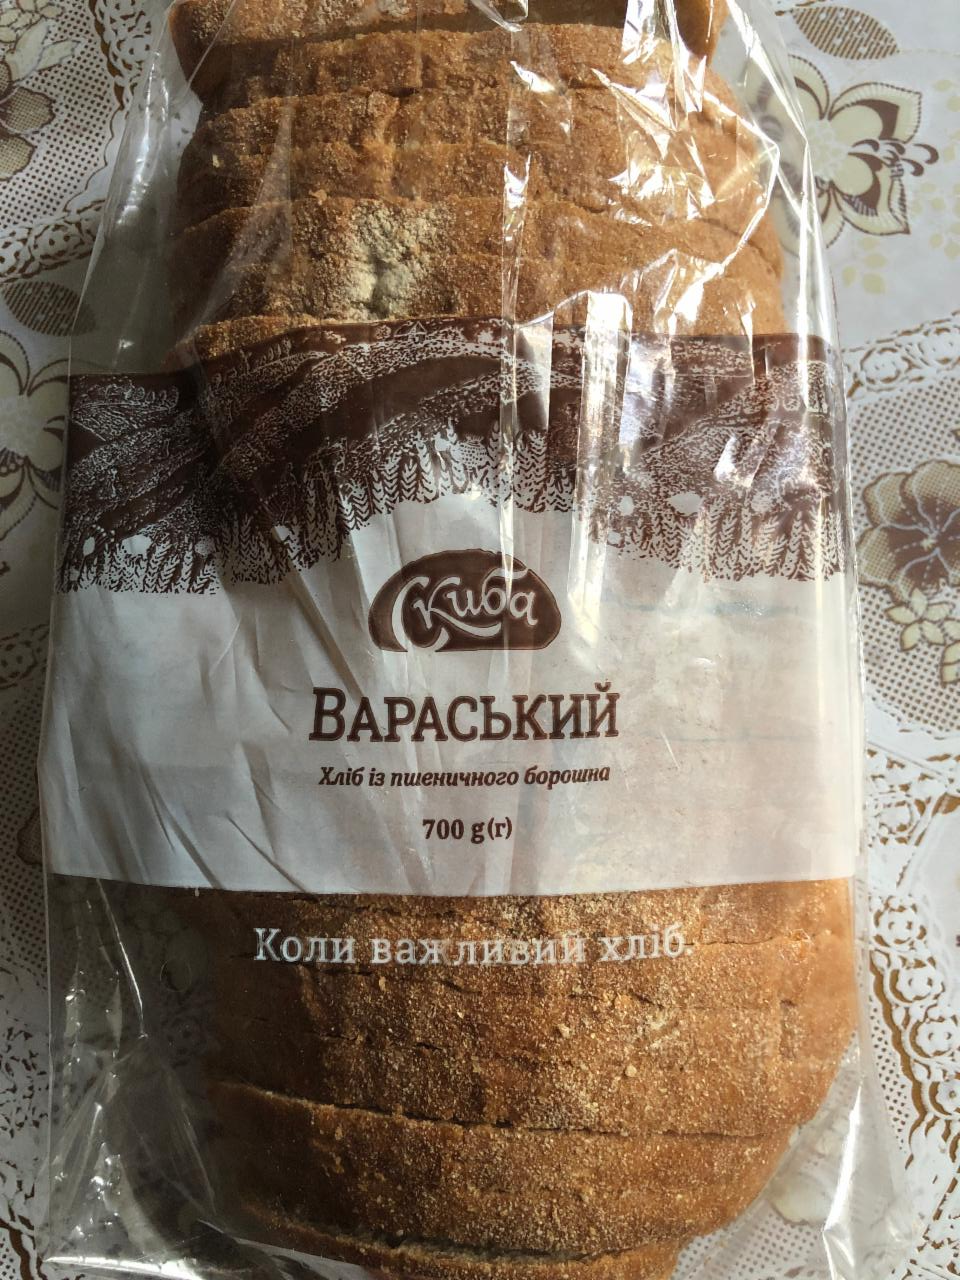 Фото - Хлеб из пшеничной муки Вараський Скиба